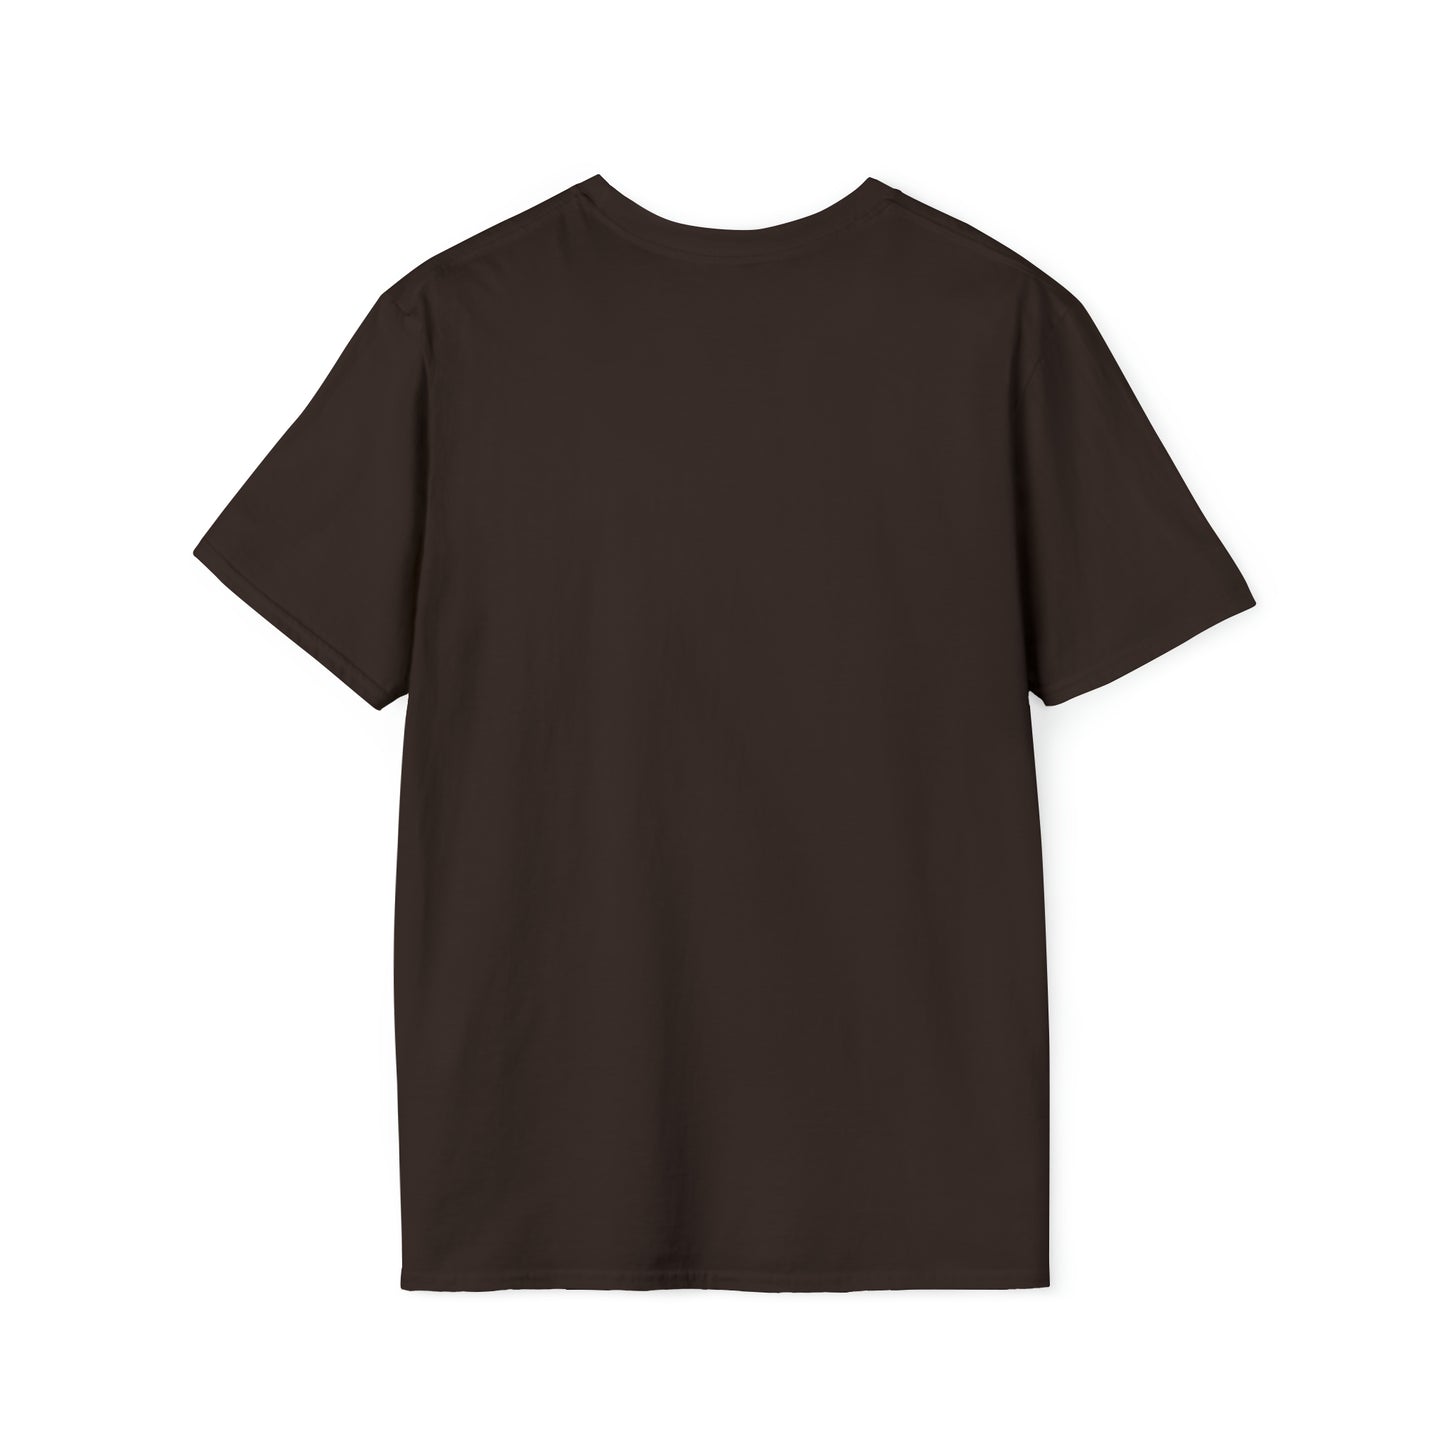 IFOL Camiseta unisex de estilo suave